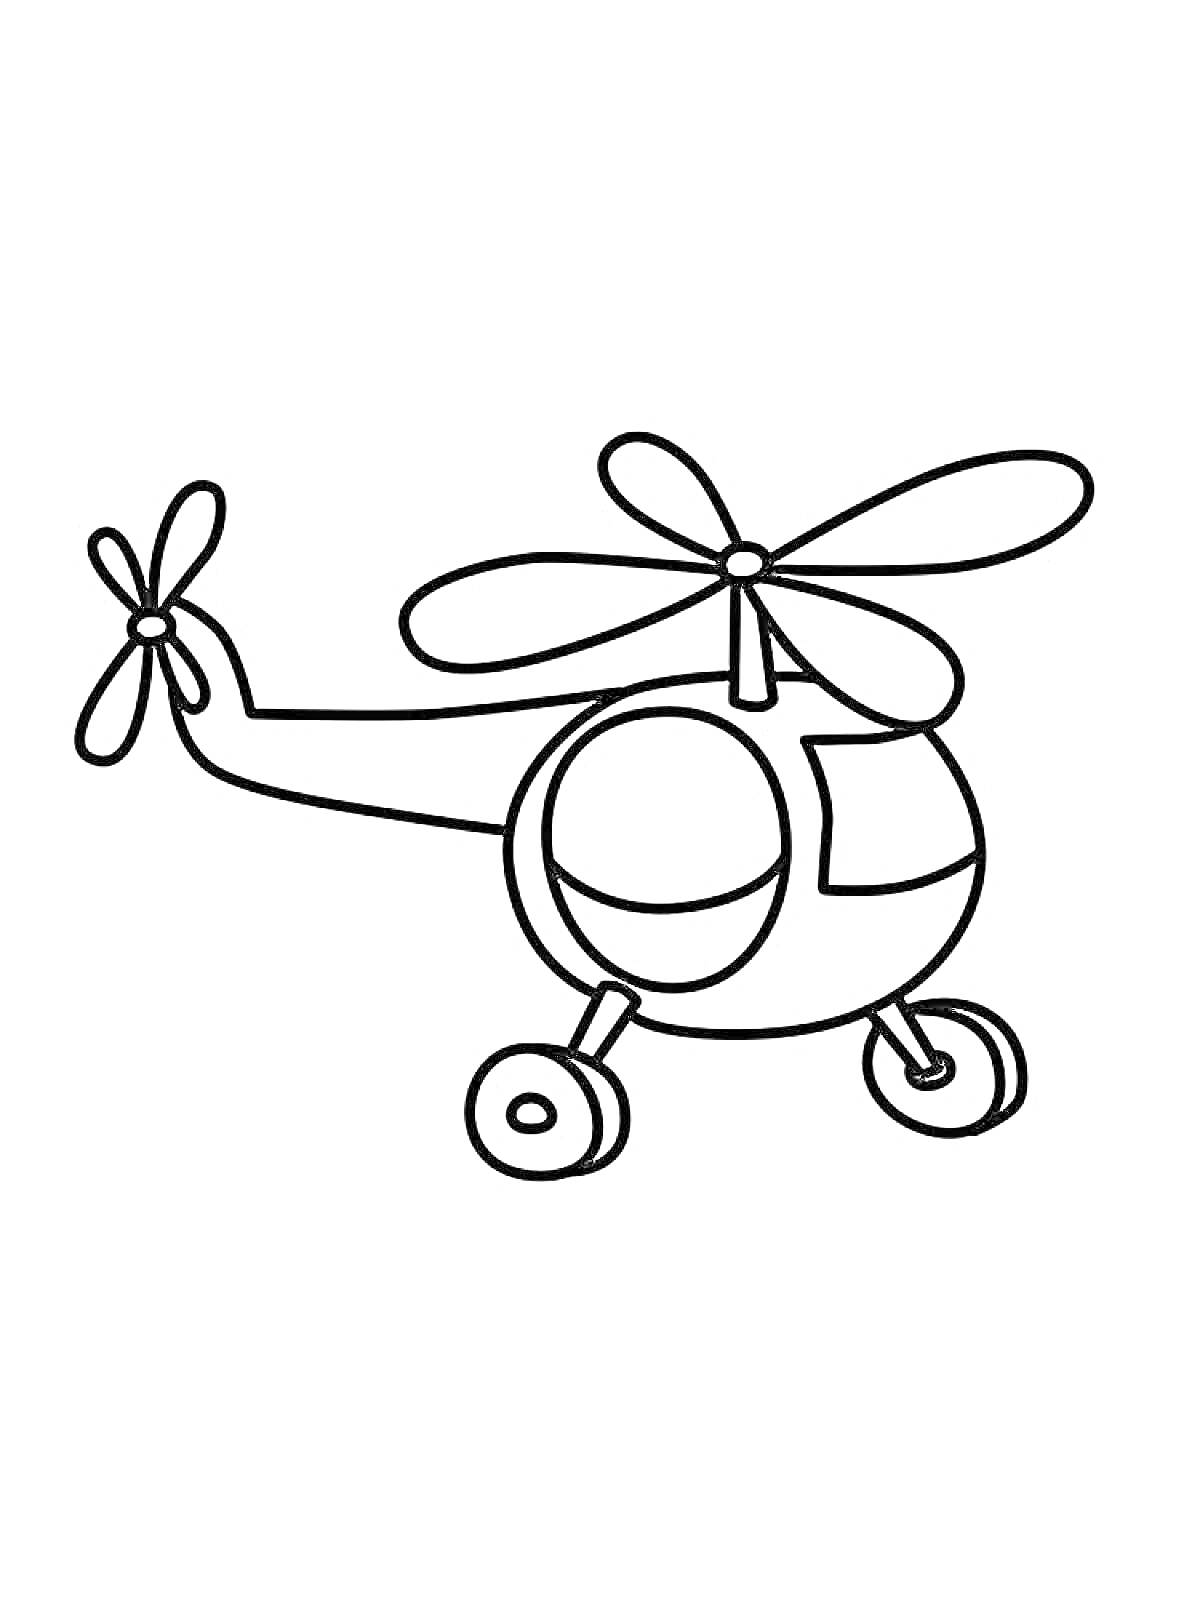 Раскраска Игрушечный вертолет с колесами, хвостовым и основным роторами